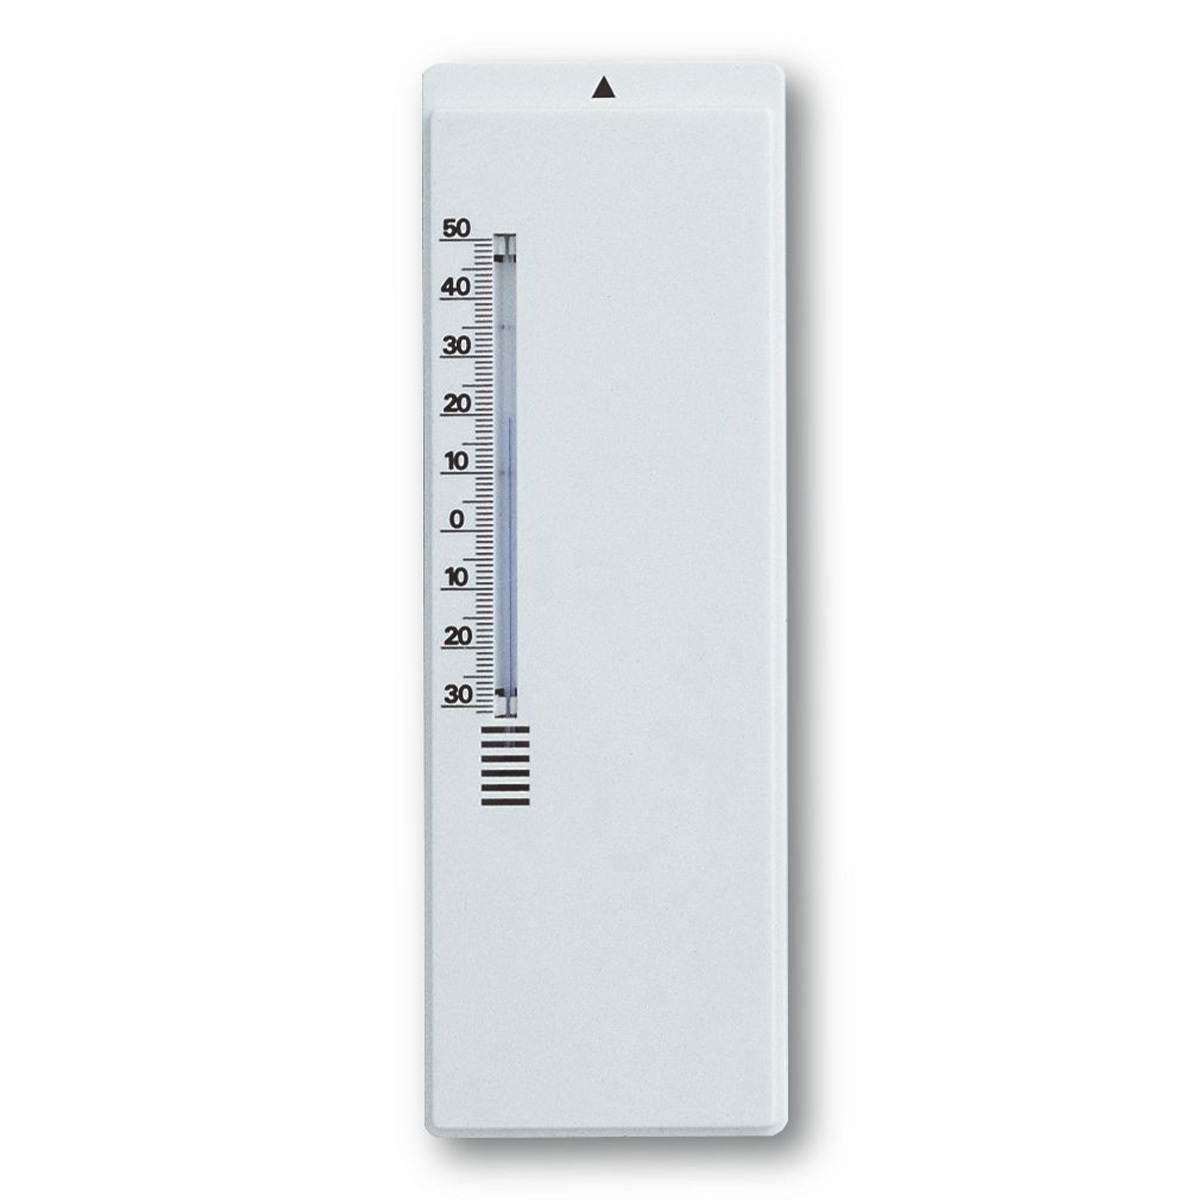 12-3004-02-analoges-innen-aussen-thermometer-1200x1200px.jpg